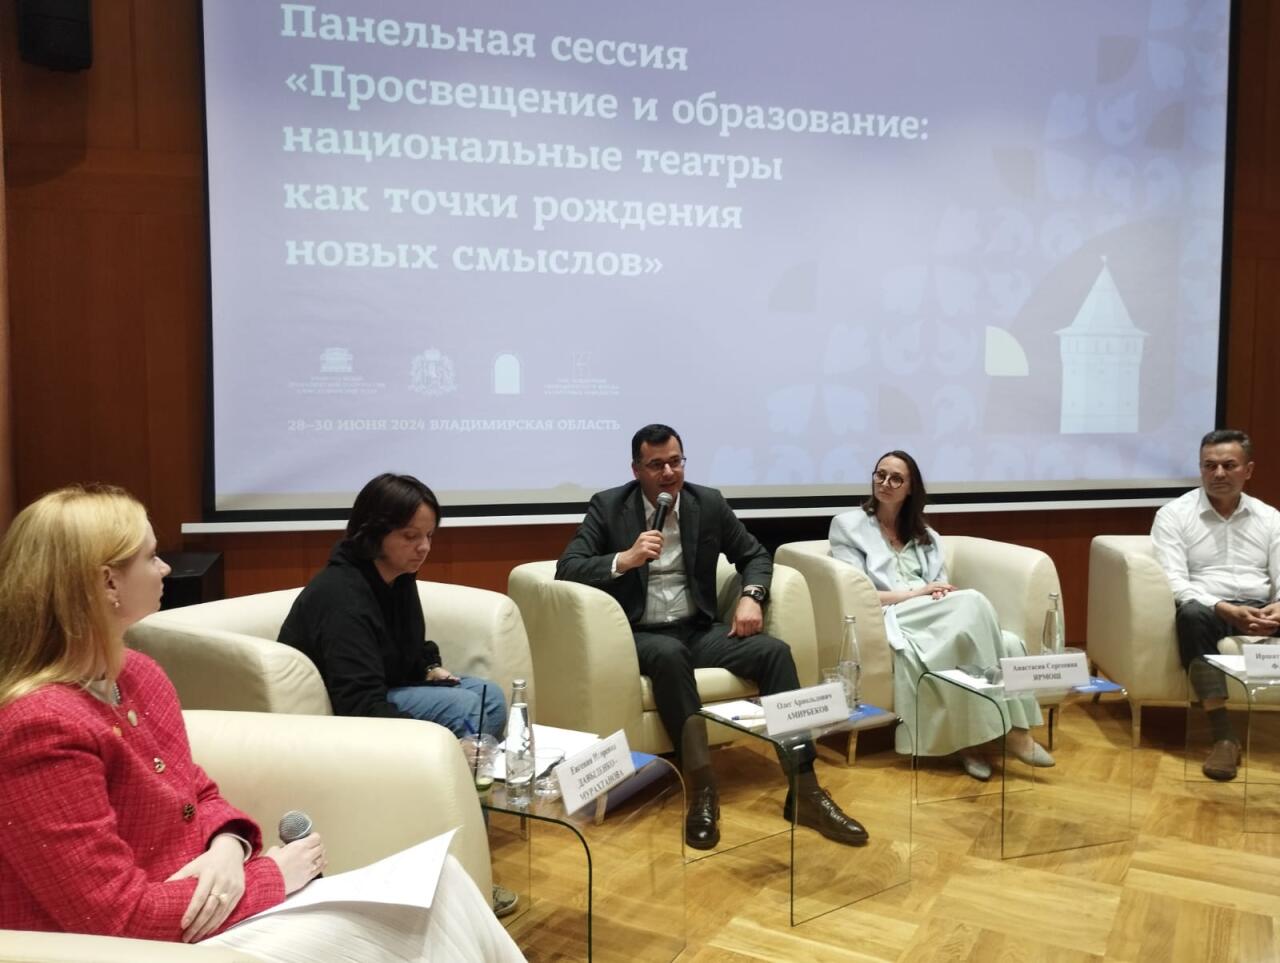 Представители Азербайджана приняли участие в Конгрессе национальных театров России